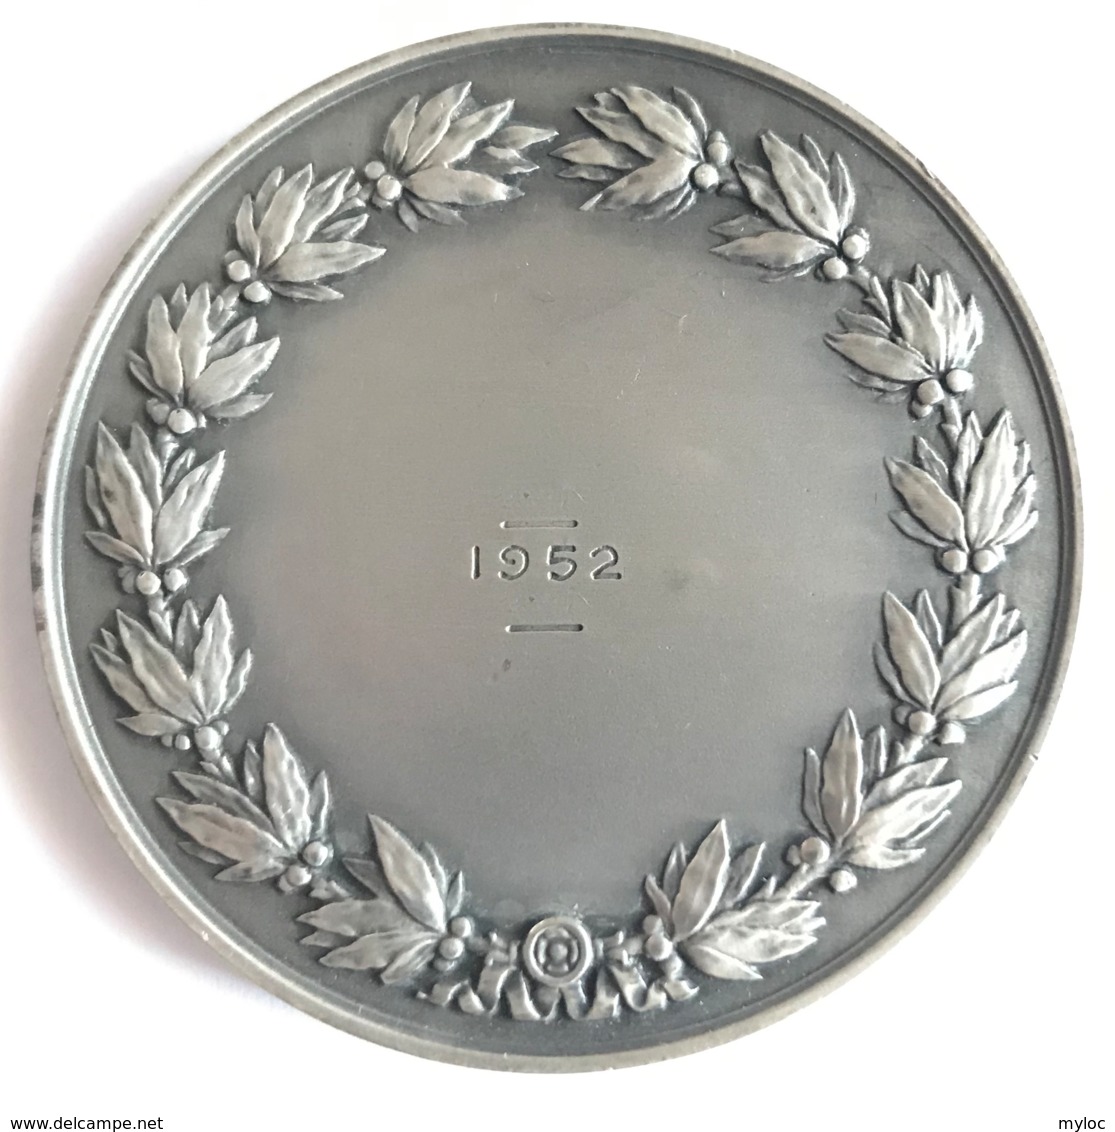 Médaille Assurances Compagnies Du Soleil. R.B. Baron. 1952. Poinçon 1 Argent. Diam. 50mm - 65gr - Unternehmen